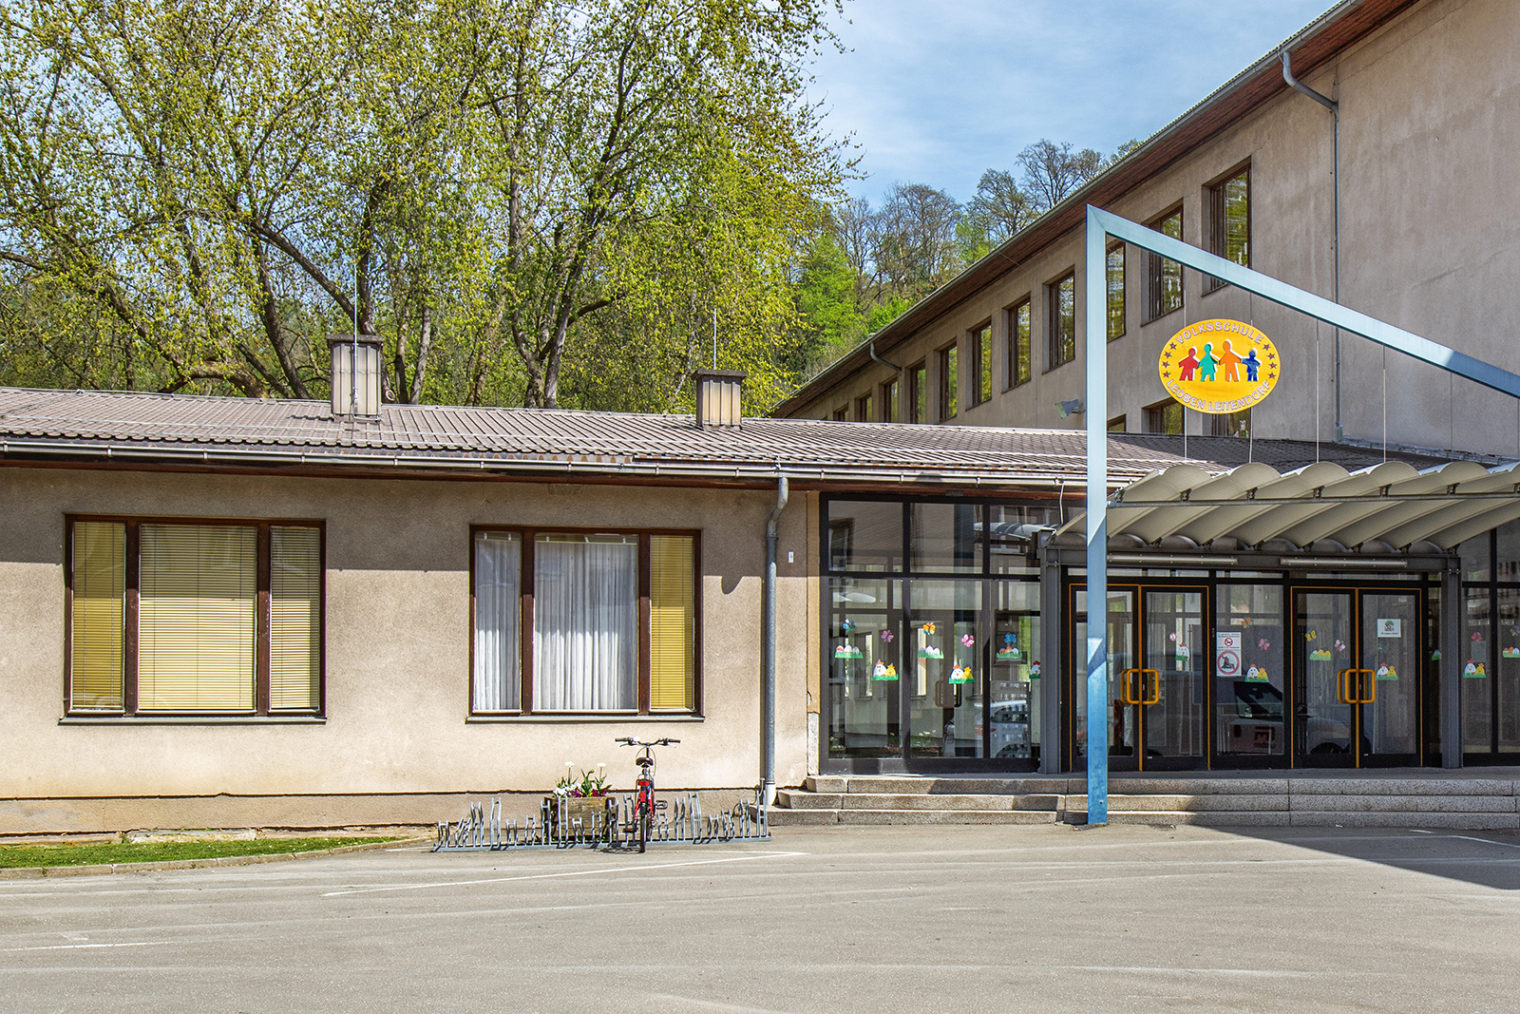 Volksschule Leoben-Leitendorf mit Fahrradständer und Logo vor dem Eingangsbereich